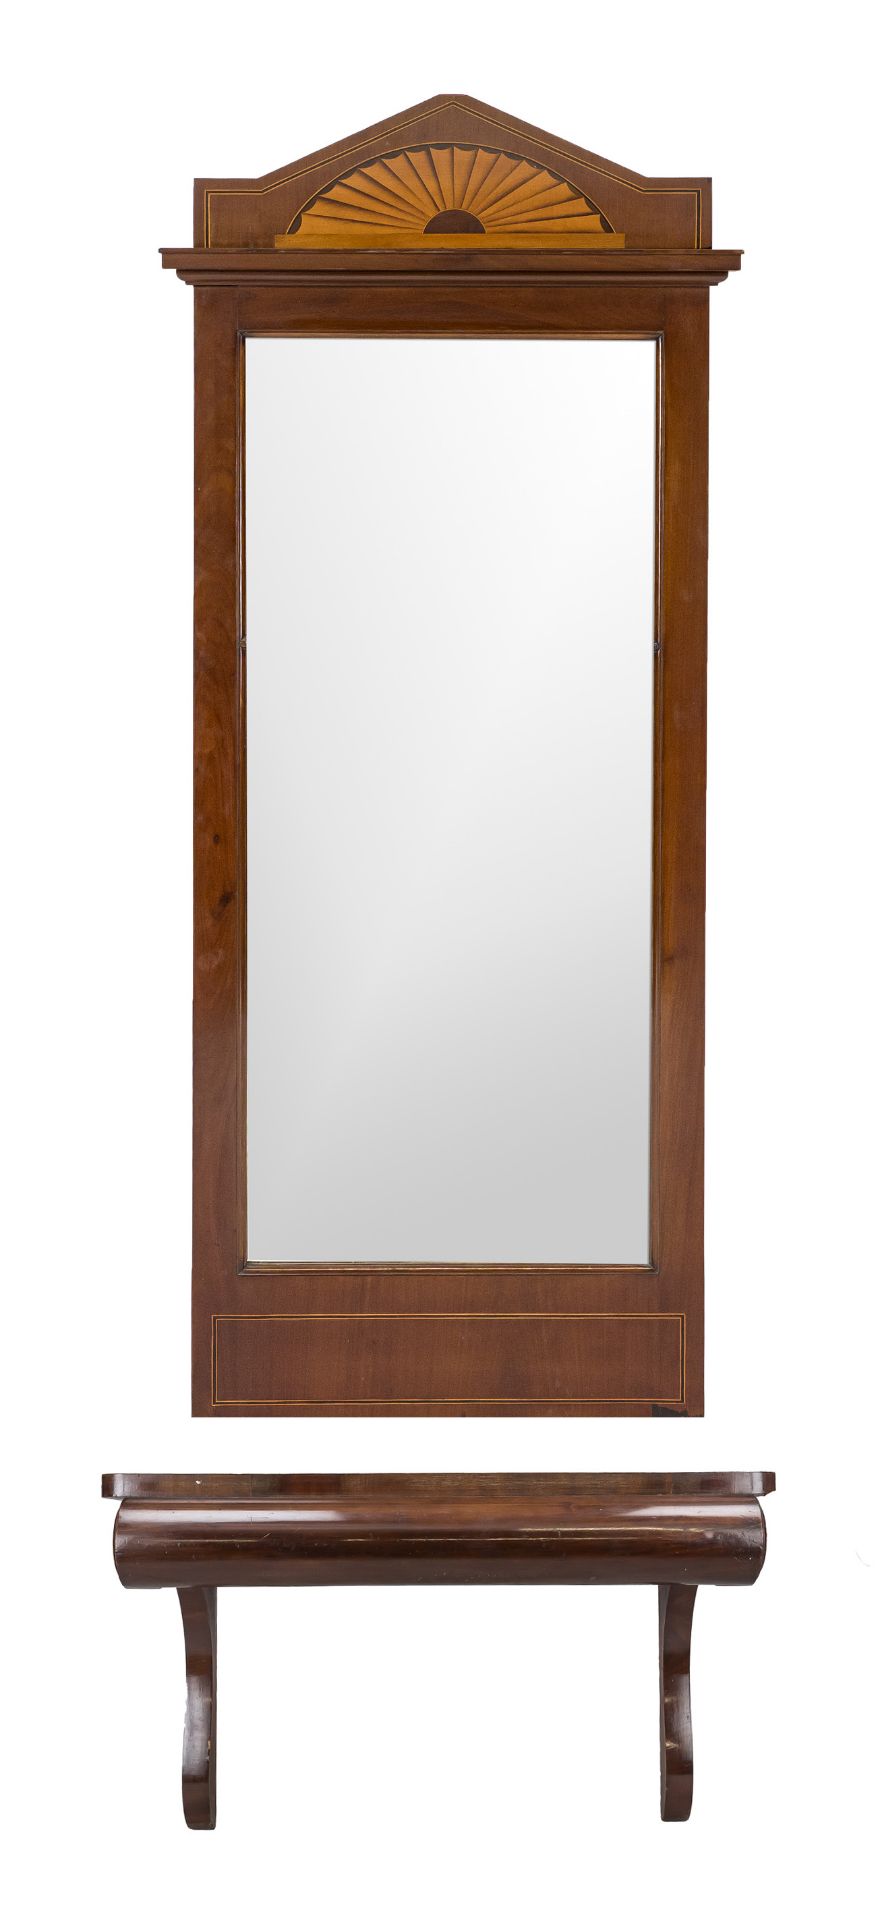 Spiegel mit Wandkonsole im Empi